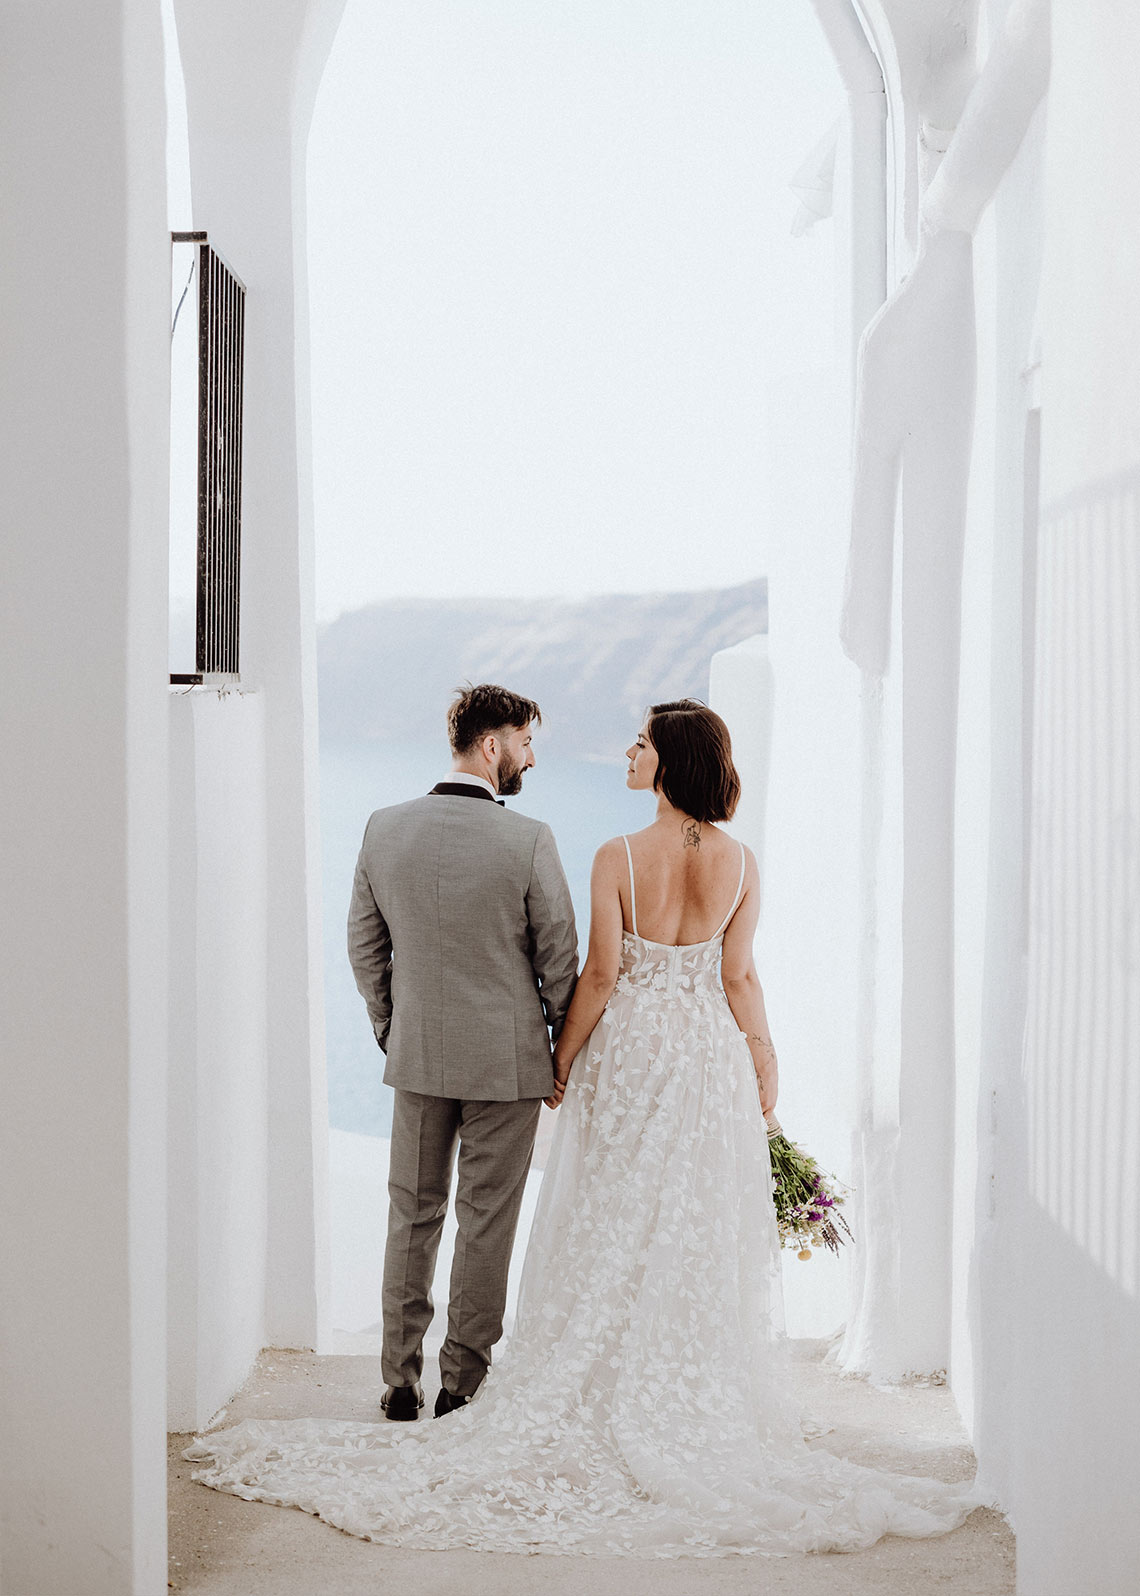 Das Brautpaar läuft durch die Gassen Santorinis